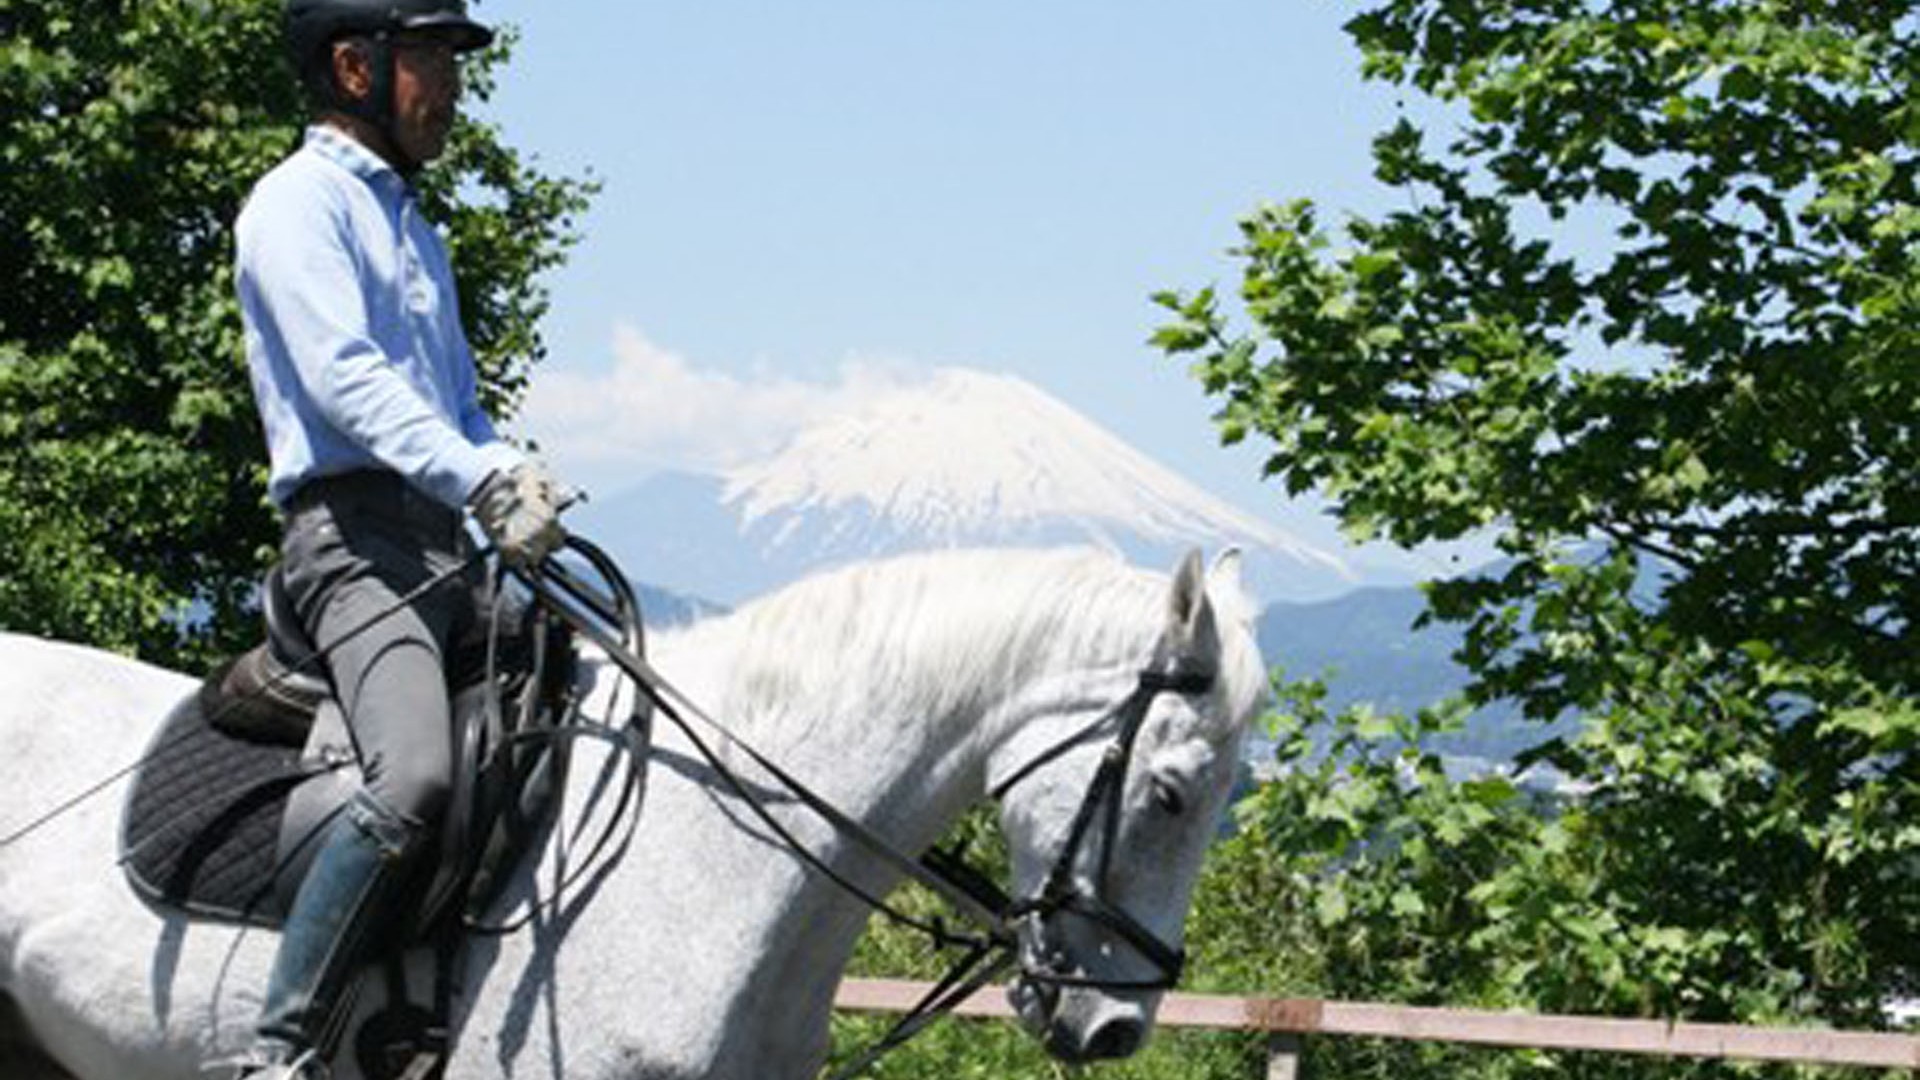 Club de Equitación Internacional de Hatano